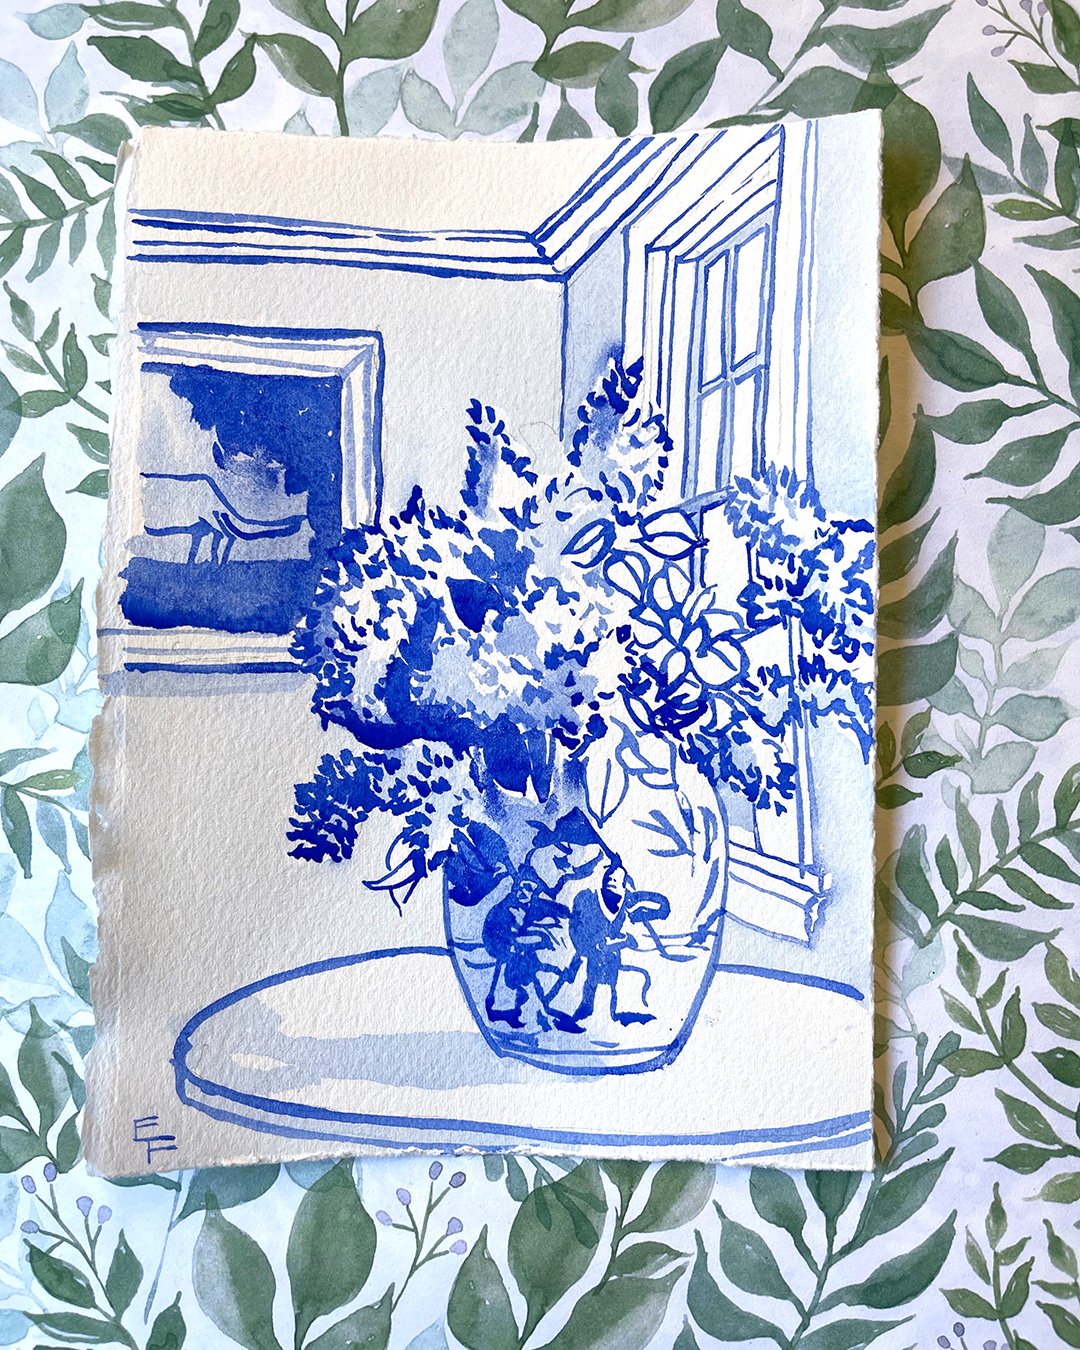 Lilacs in Ginger Jar, 12 x 16 inches — Elizabeth Floyd